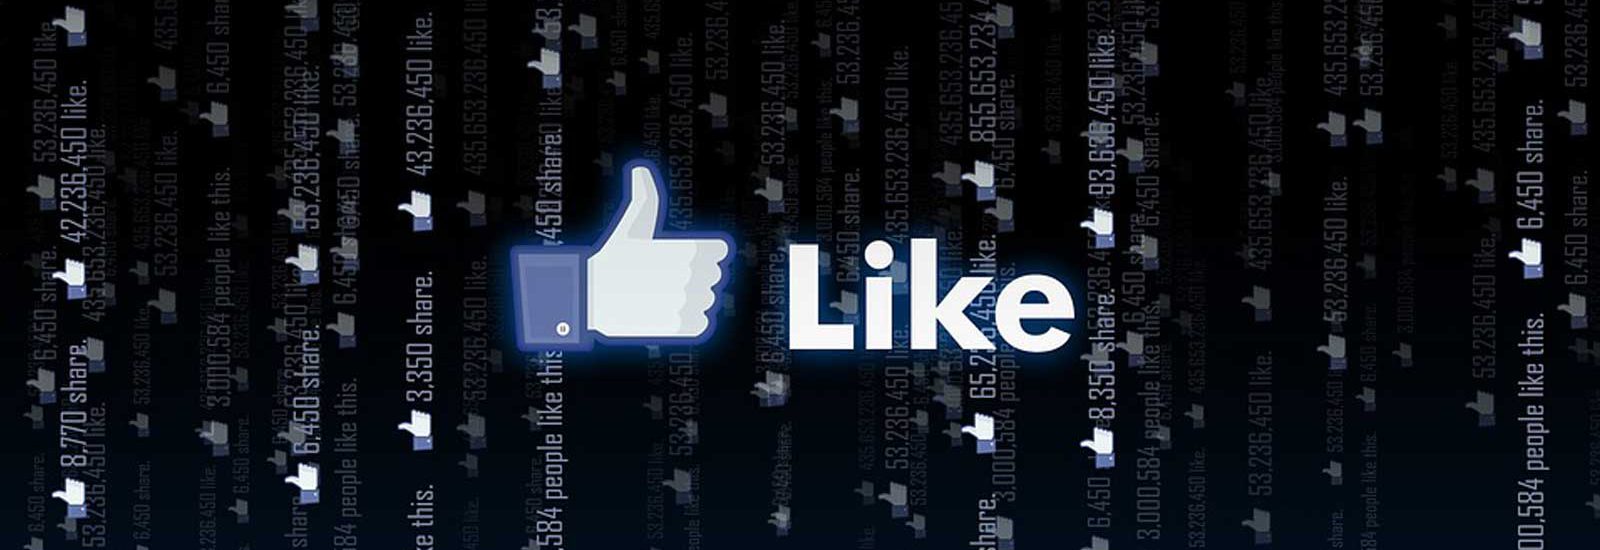 קידום וניהול פייסבוק - סימון וכתובת LIKE של פייסבוק